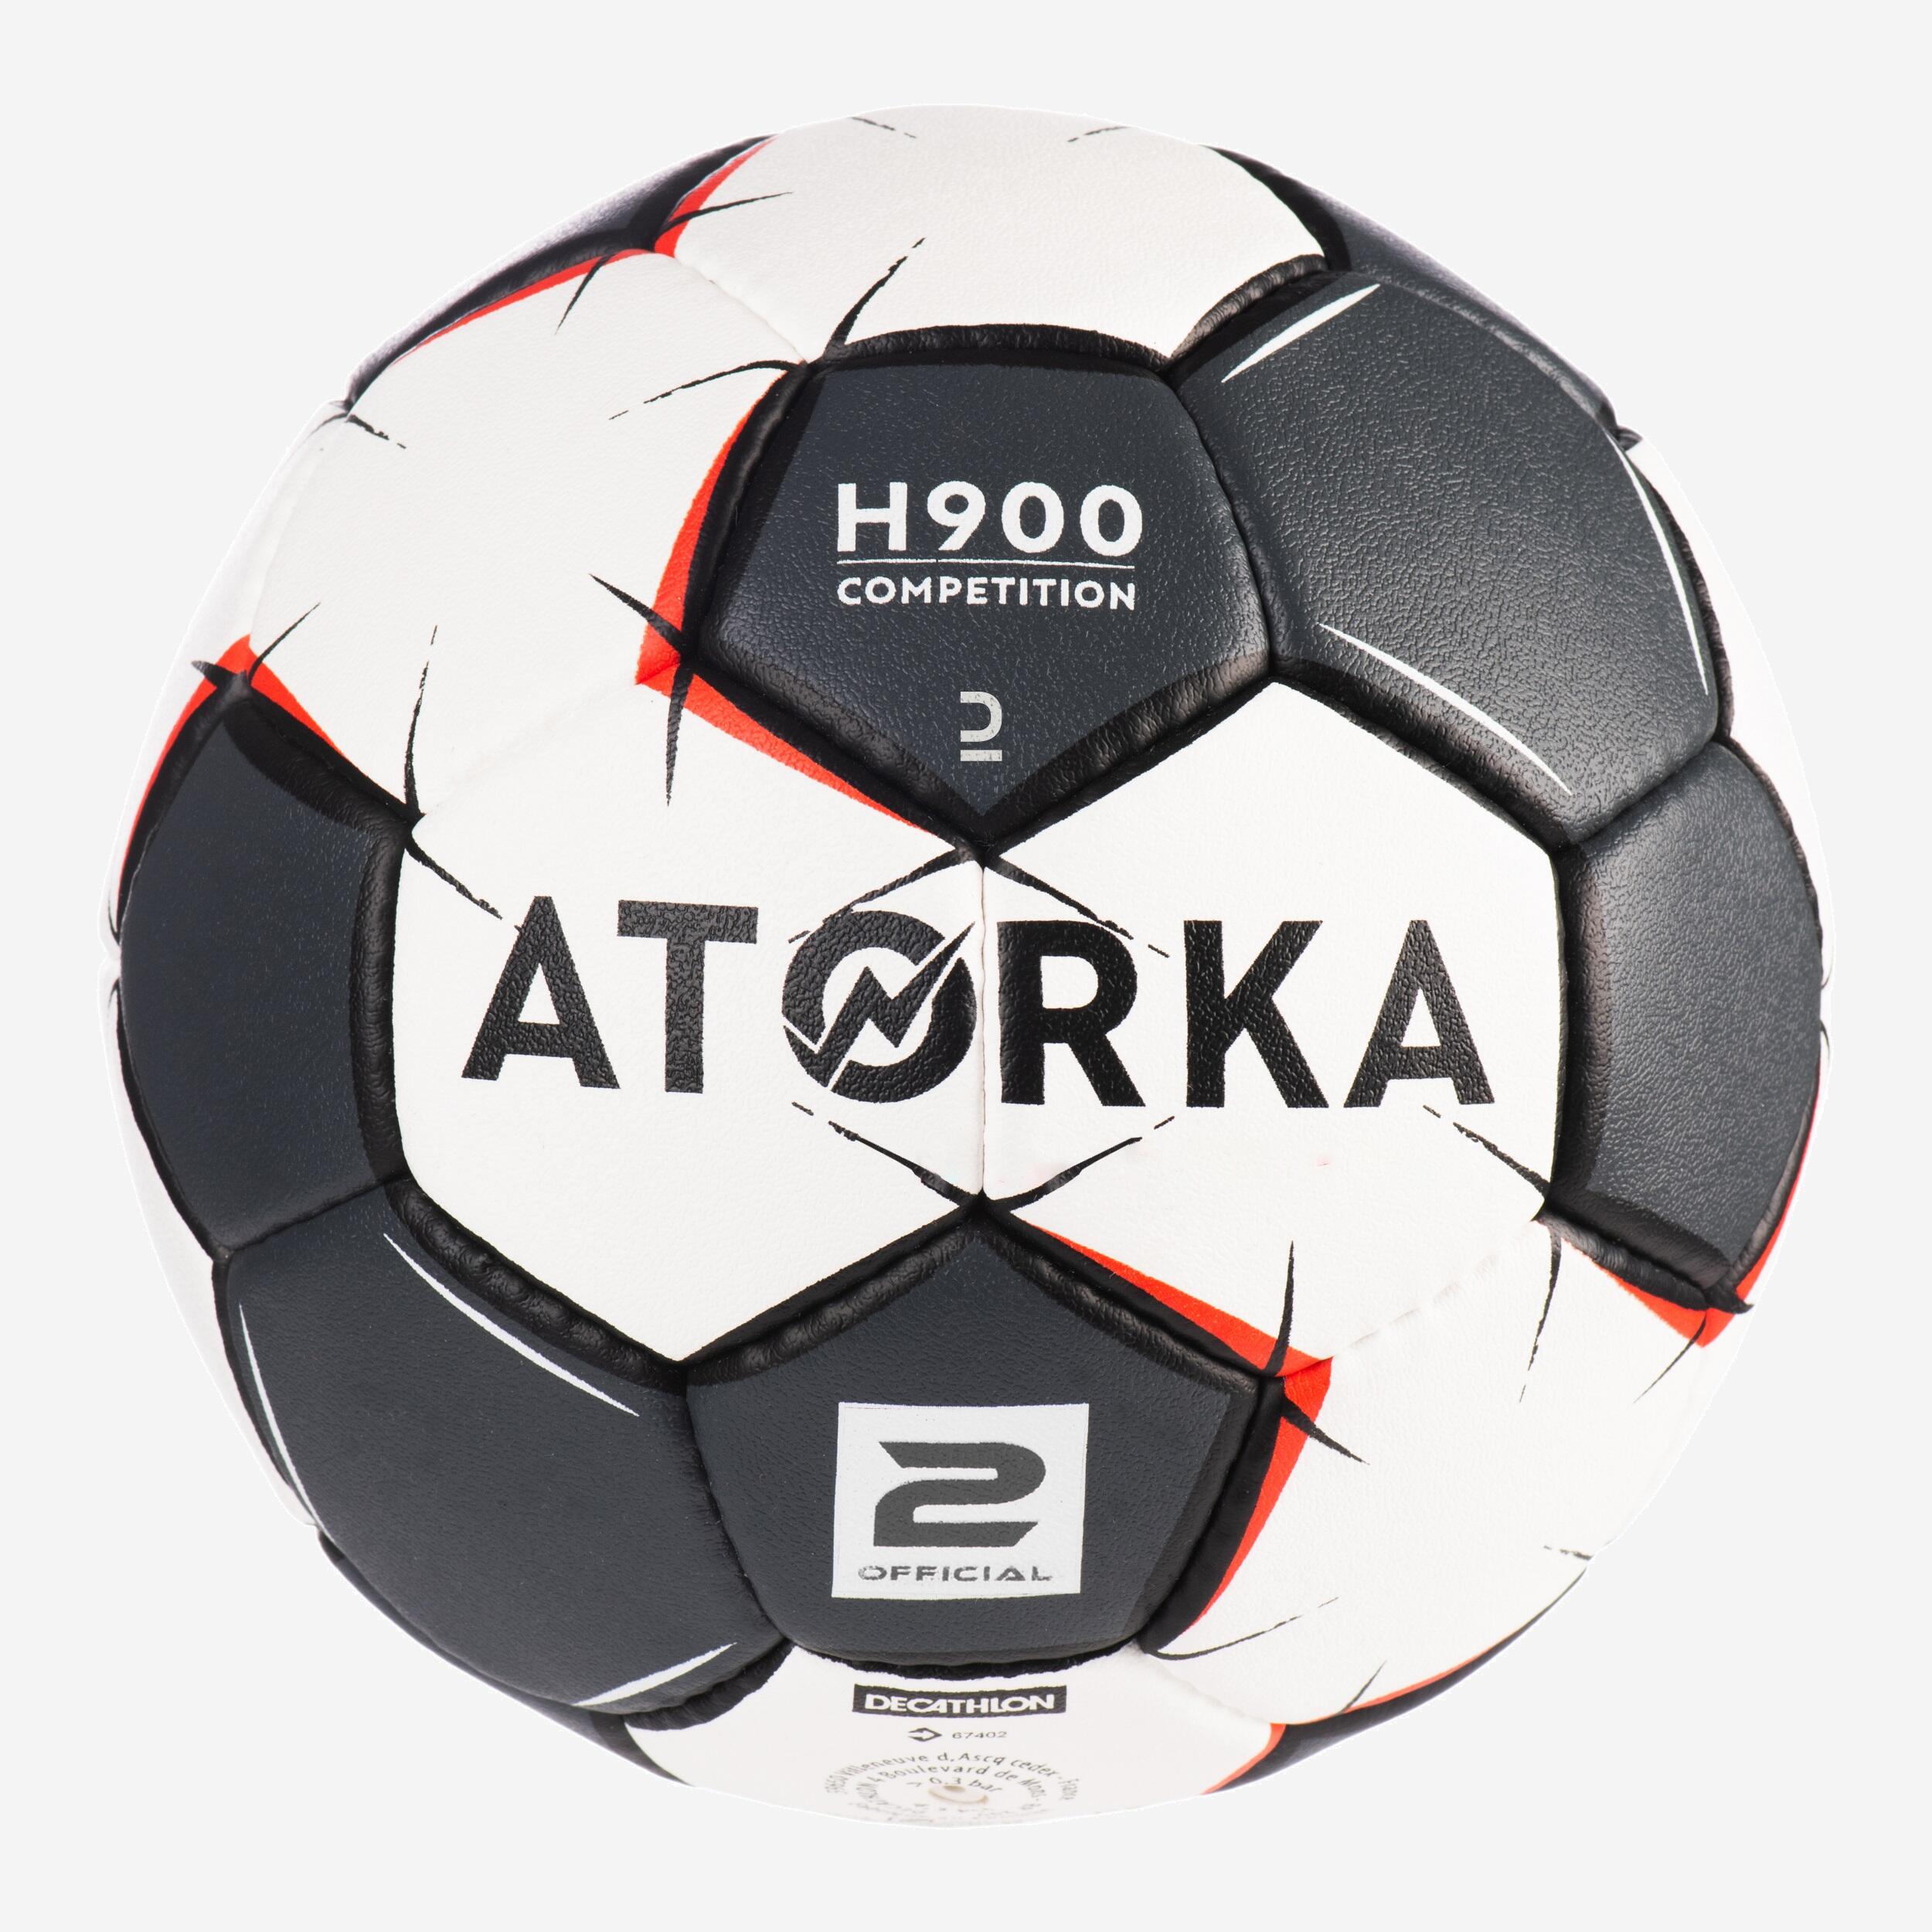 ATORKA Ballon De Handball H900 Taille 2 -